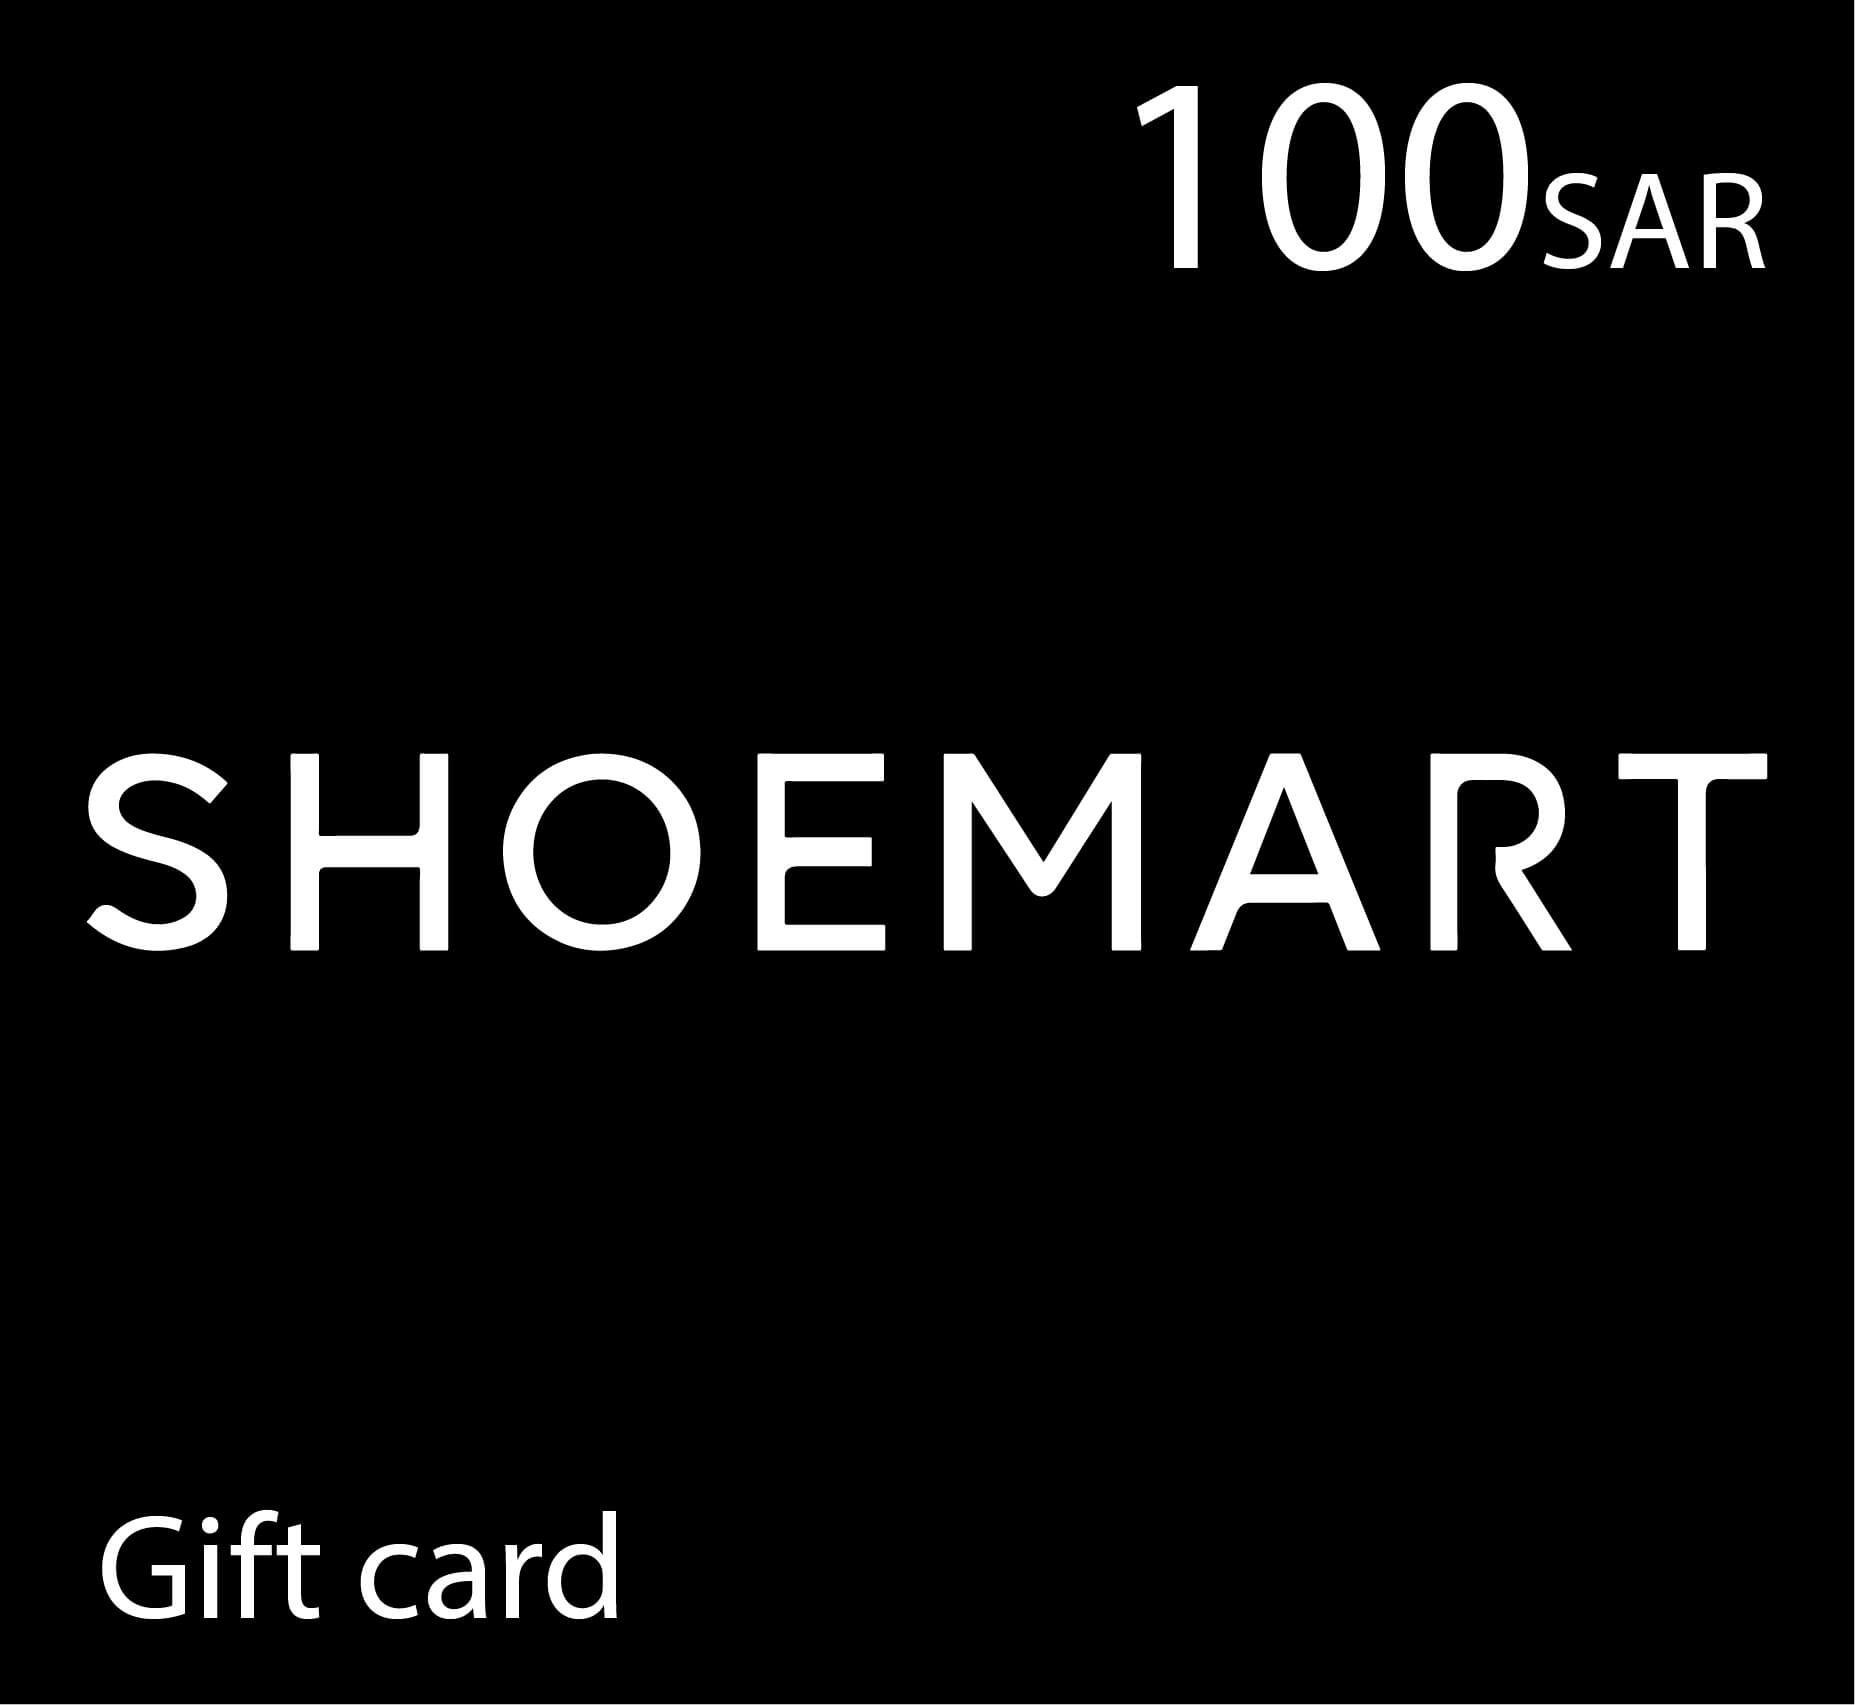 Shoemart Gift Card - 100 SAR